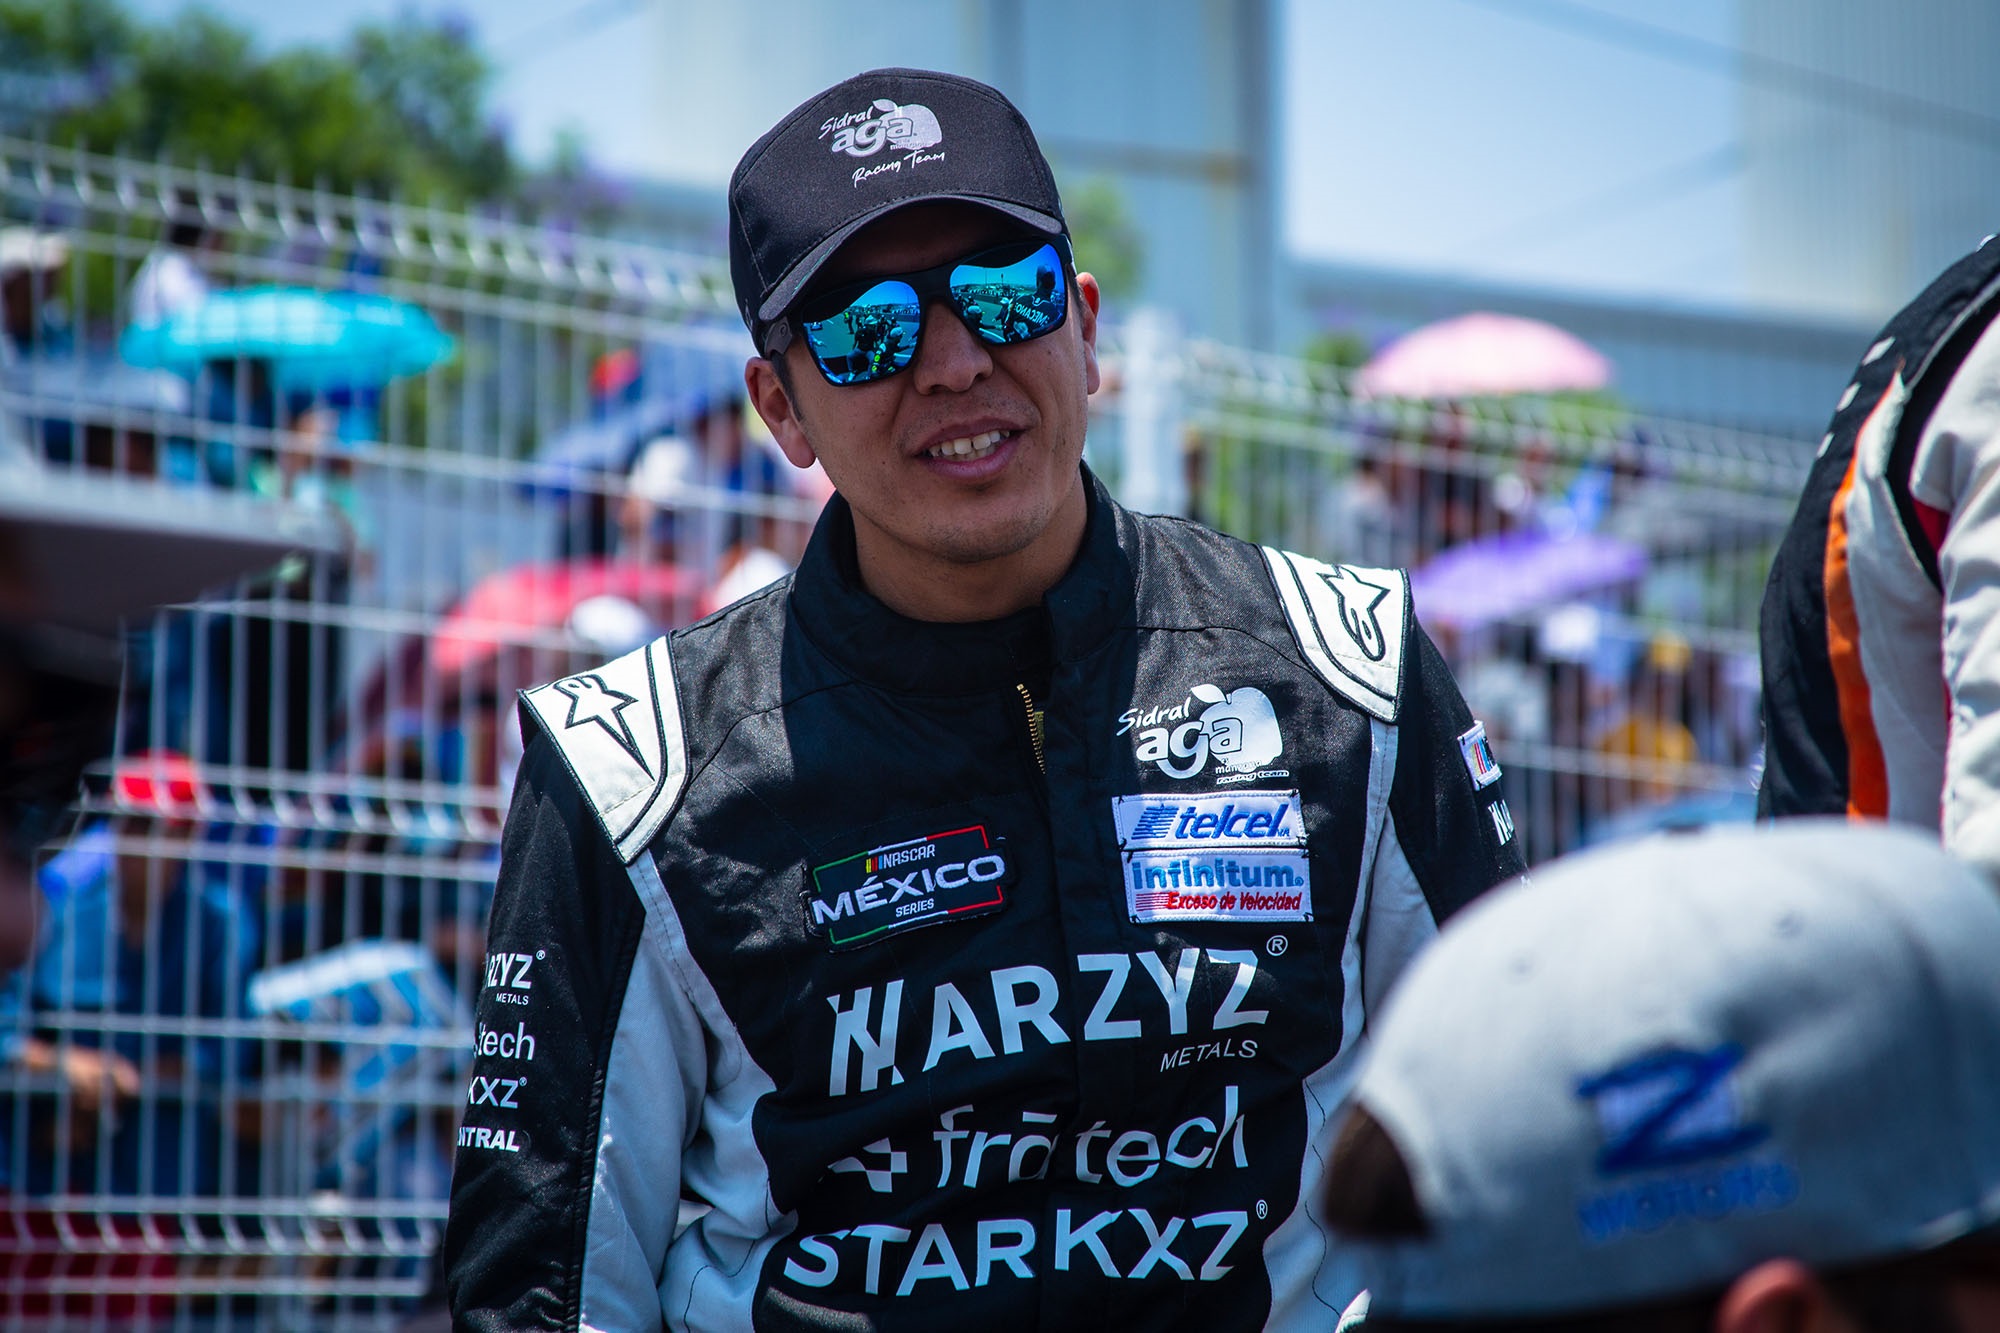 La Escudería Arzyz-Fratech-Starkxz, salió de Querétaro con Top-10 de Enrique Baca en NASCAR México Series